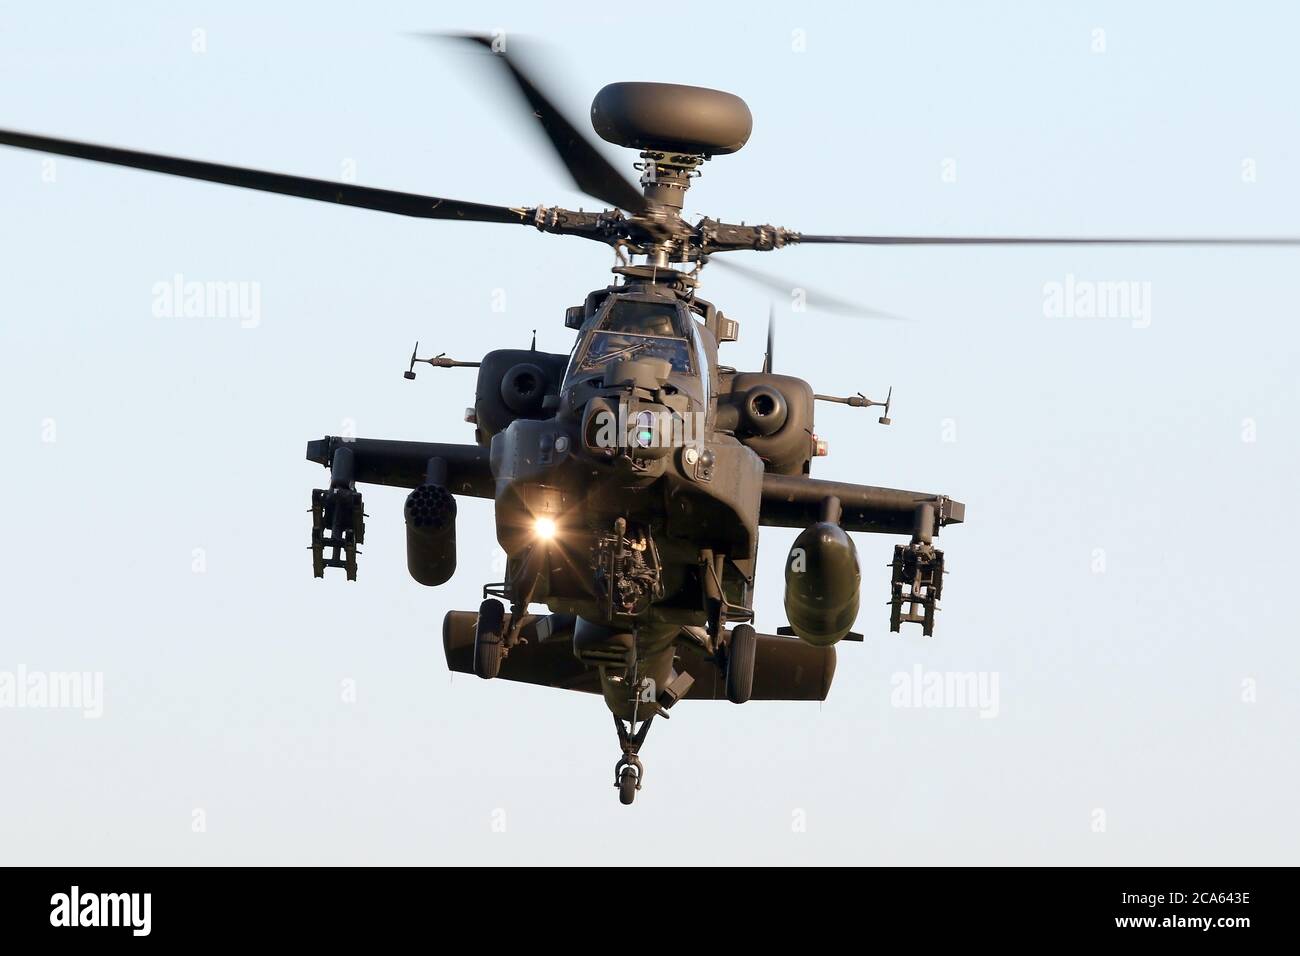 L'hélicoptère d'attaque Apache du corps de l'armée de l'air survole l'aérodrome de Wattisham, Suffolk. Banque D'Images